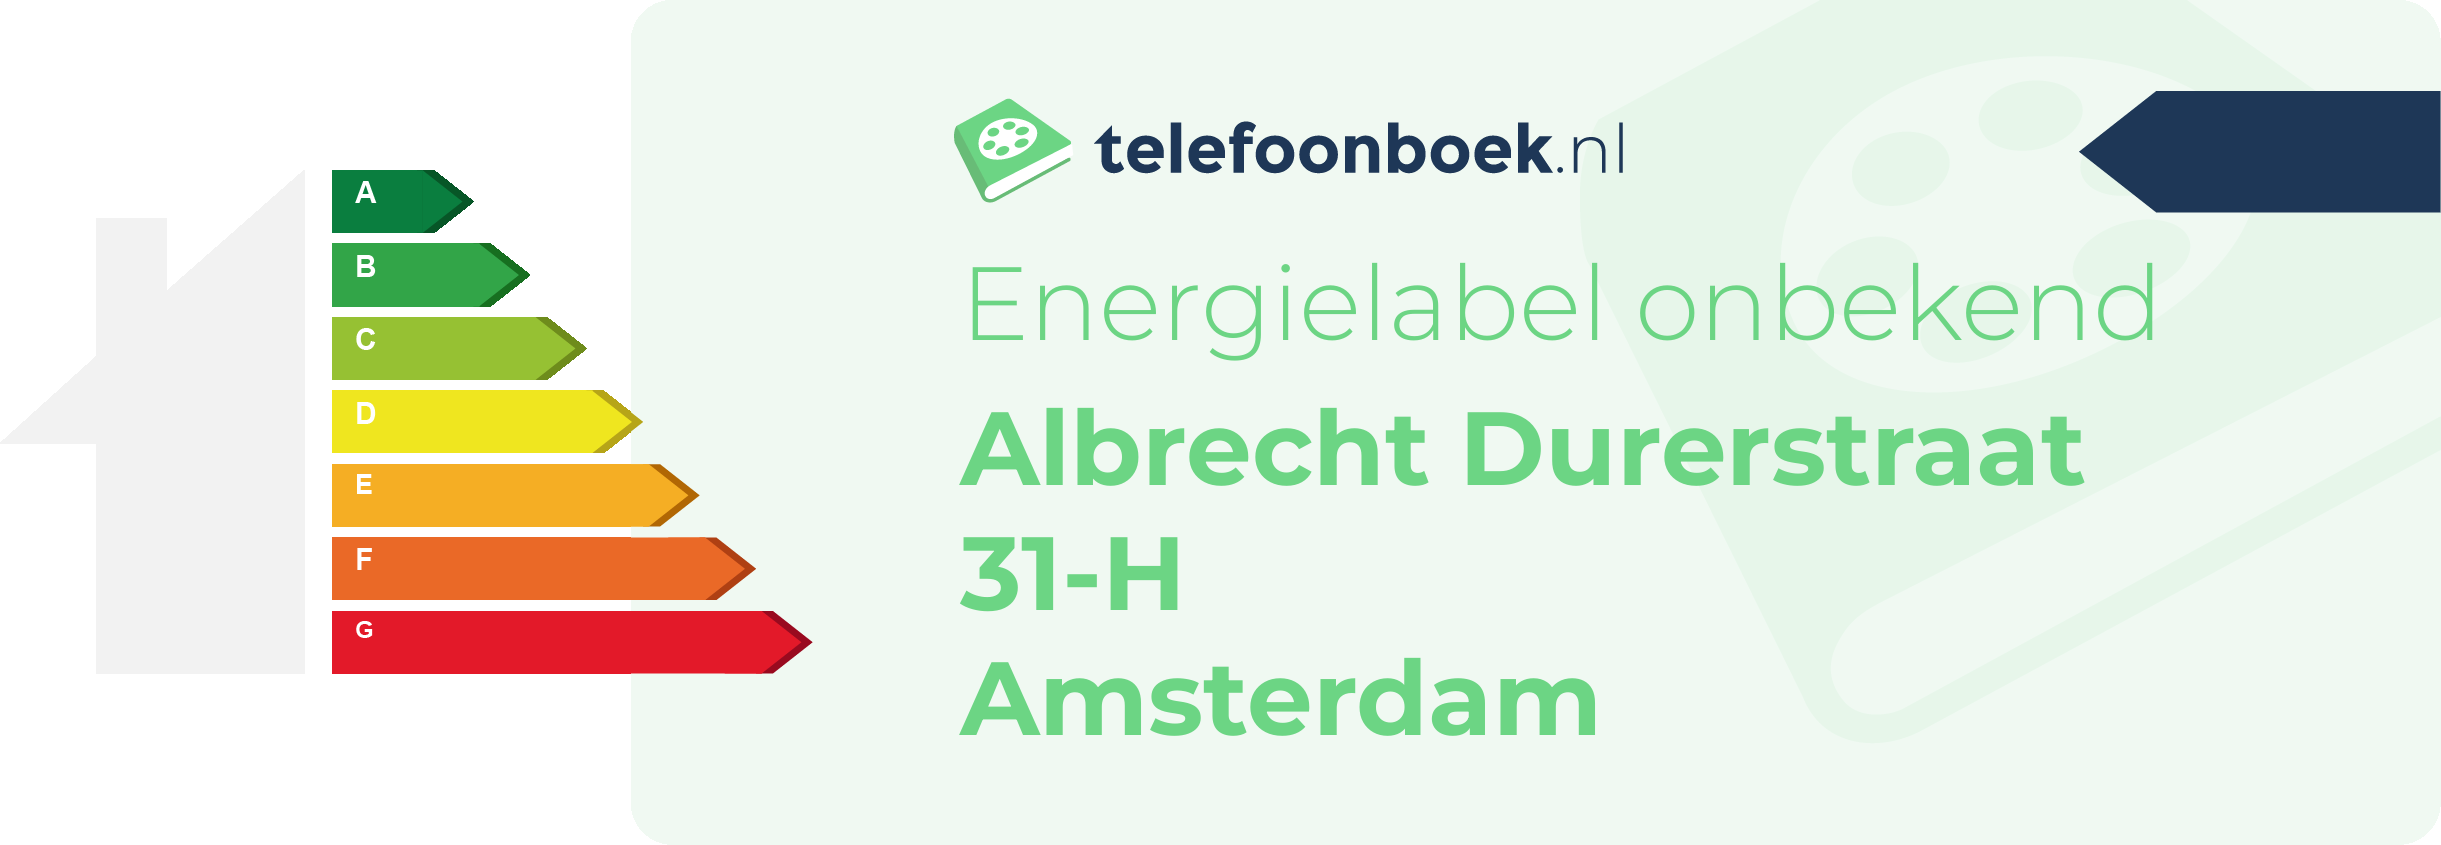 Energielabel Albrecht Durerstraat 31-H Amsterdam